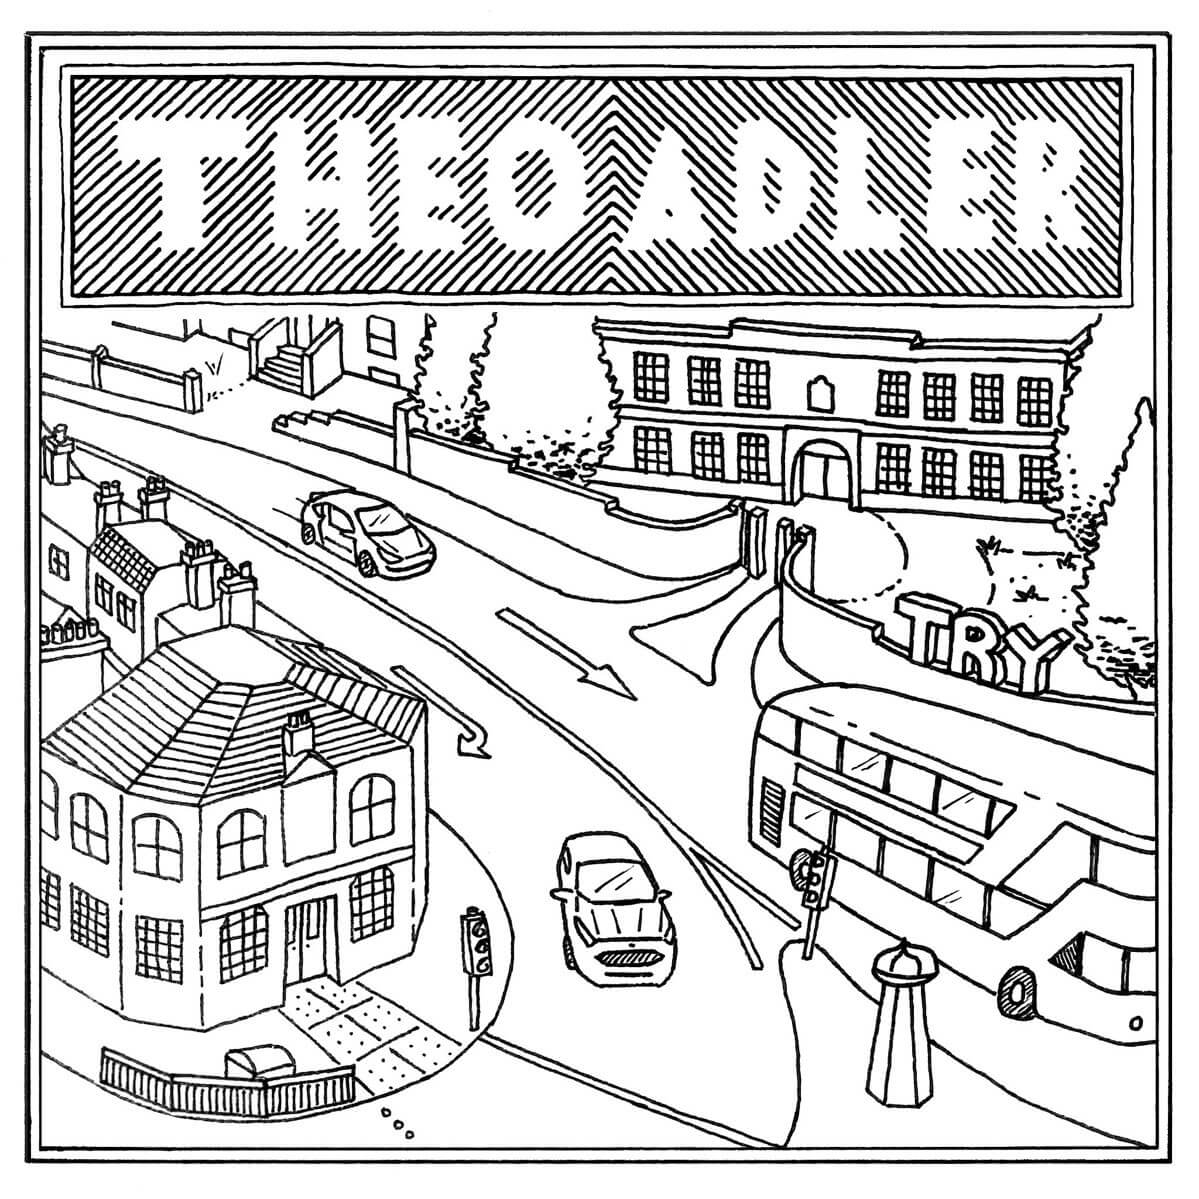 Try - Theo Adler